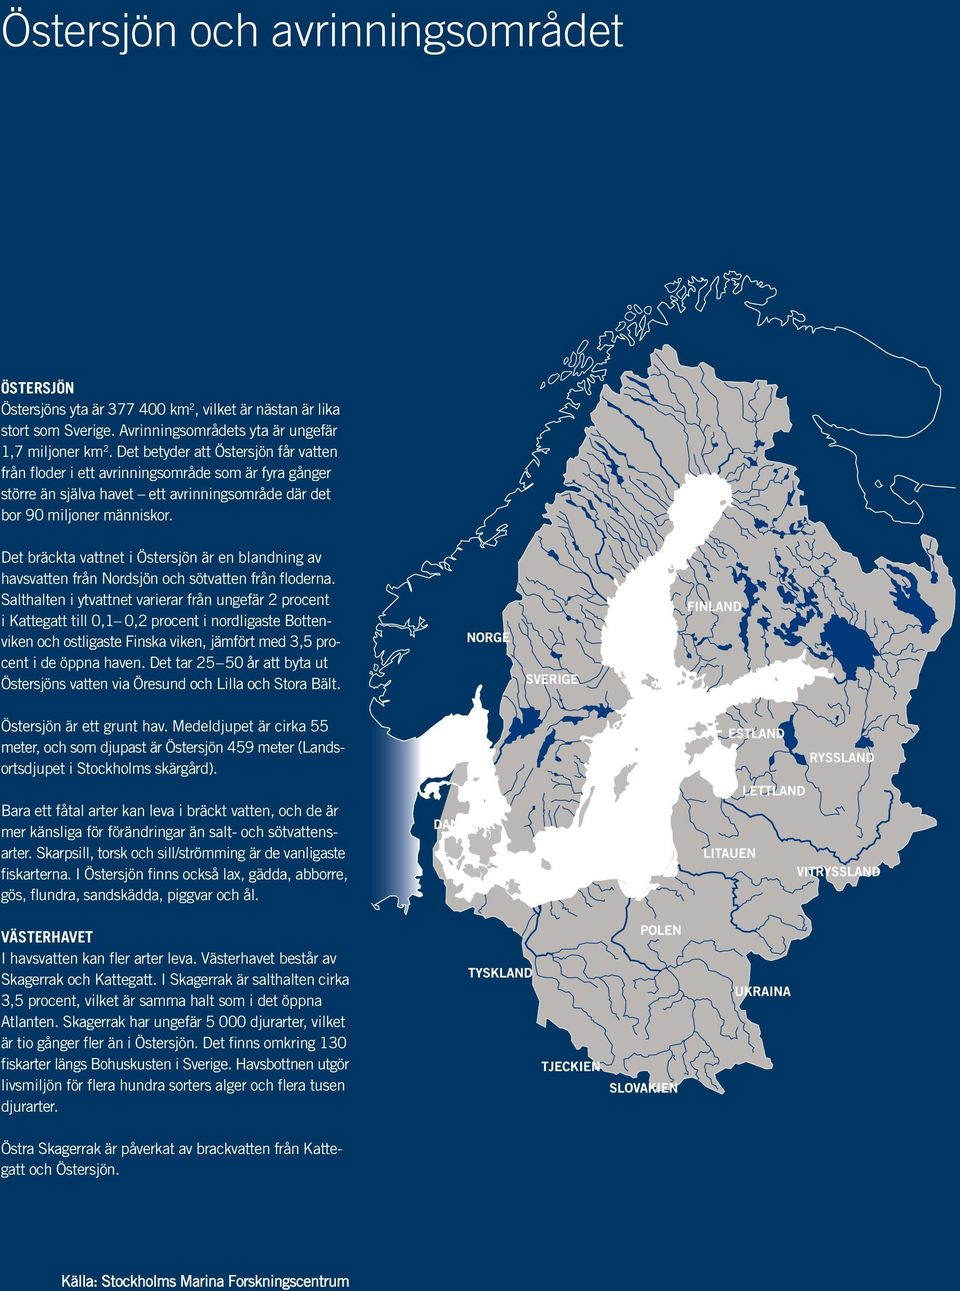 Det bräckta vattnet i Östersjön är en blandning av havsvatten från Nordsjön och sötvatten från floderna.